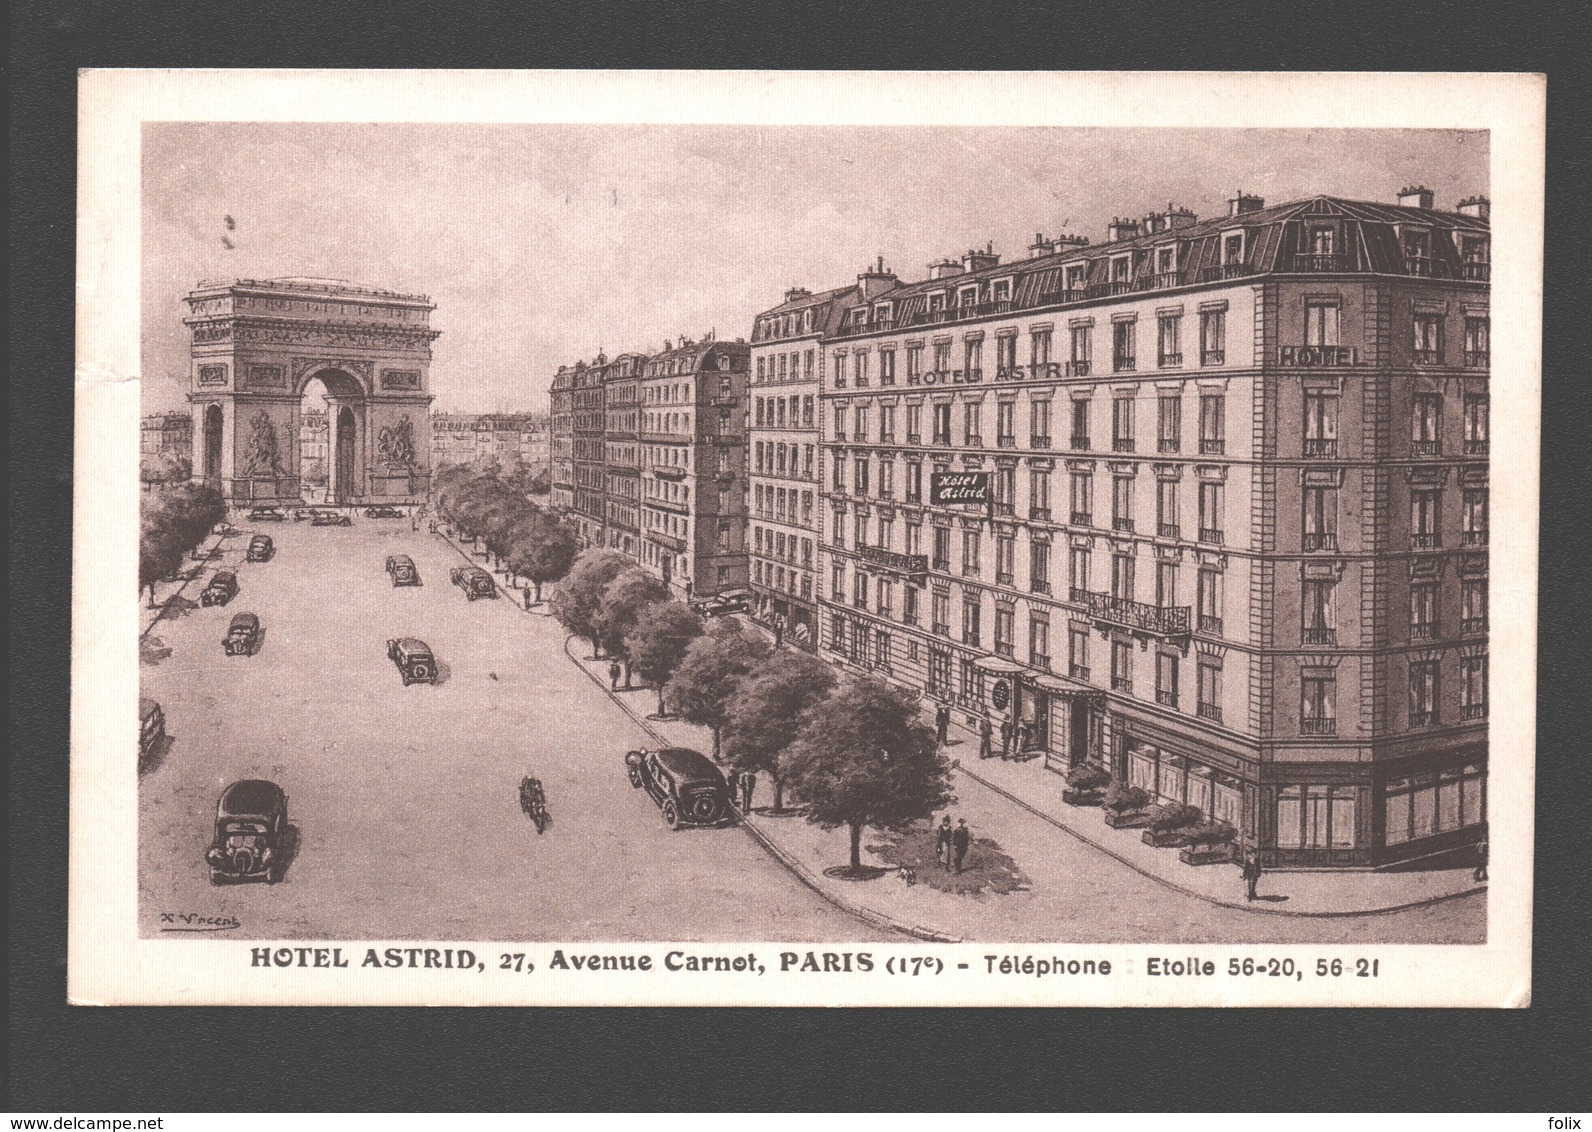 Paris - Hôtel Astrid, Avenue Carnot - Confirmation De Réservation - 1949 - Cafés, Hôtels, Restaurants